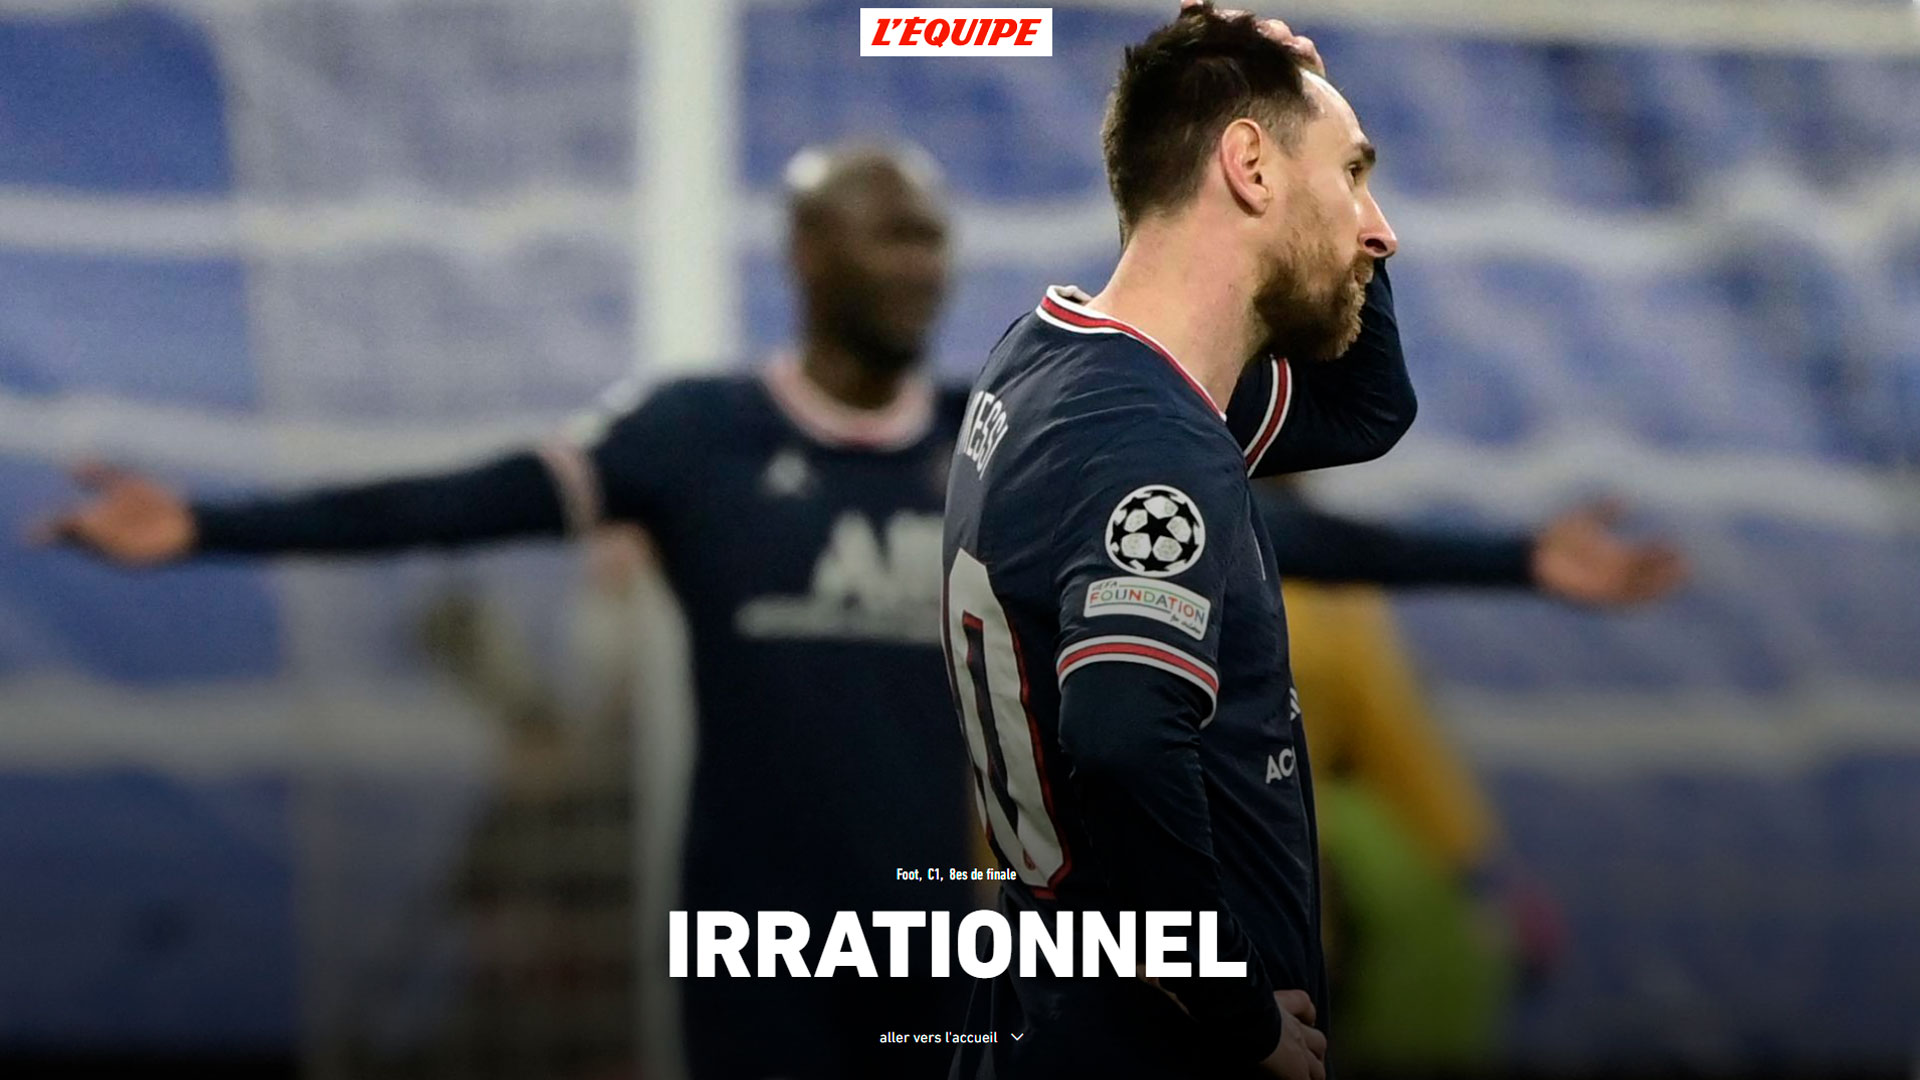 L'Equipe ilustró la derrota con un "Irracional" gigante y la imagen de Messi